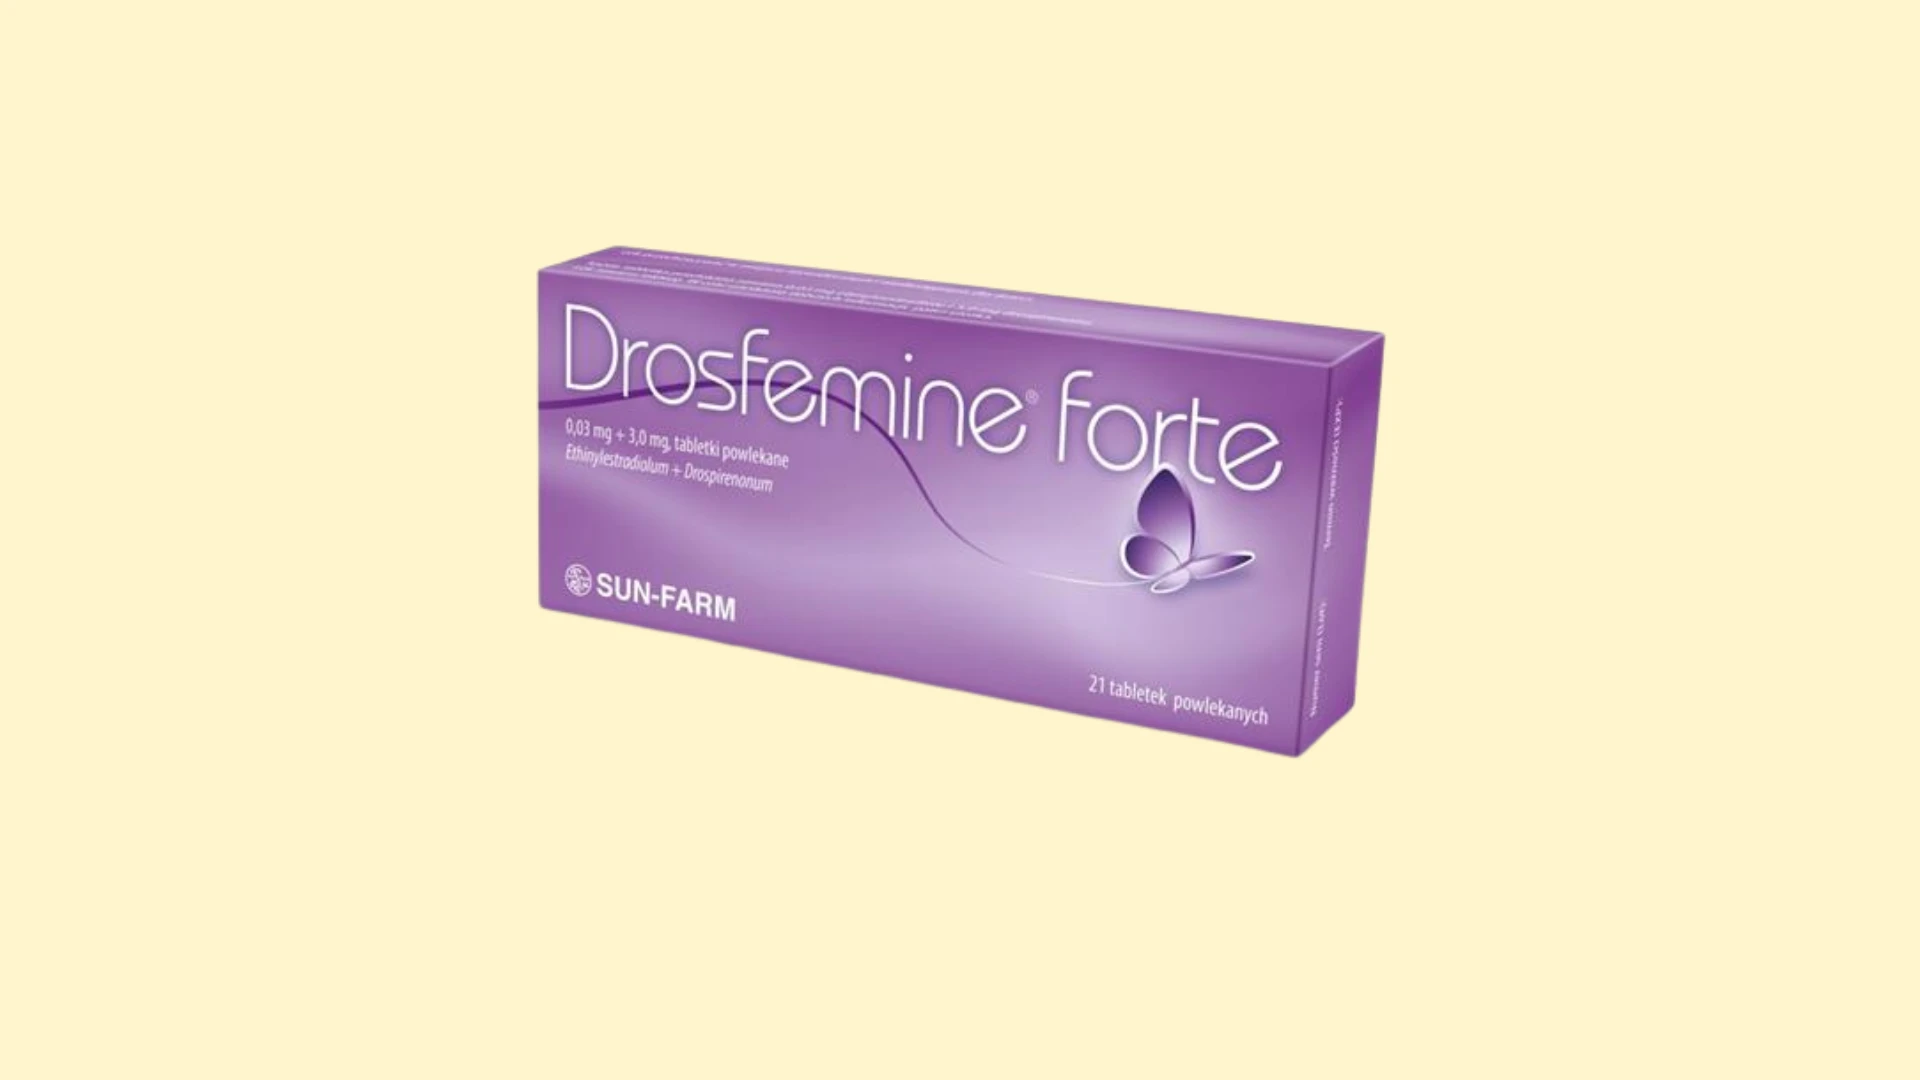 Drosfemine forte - Recepta online - e-Recepta z konsultacją | cena, dawkowanie, przeciwwskazania